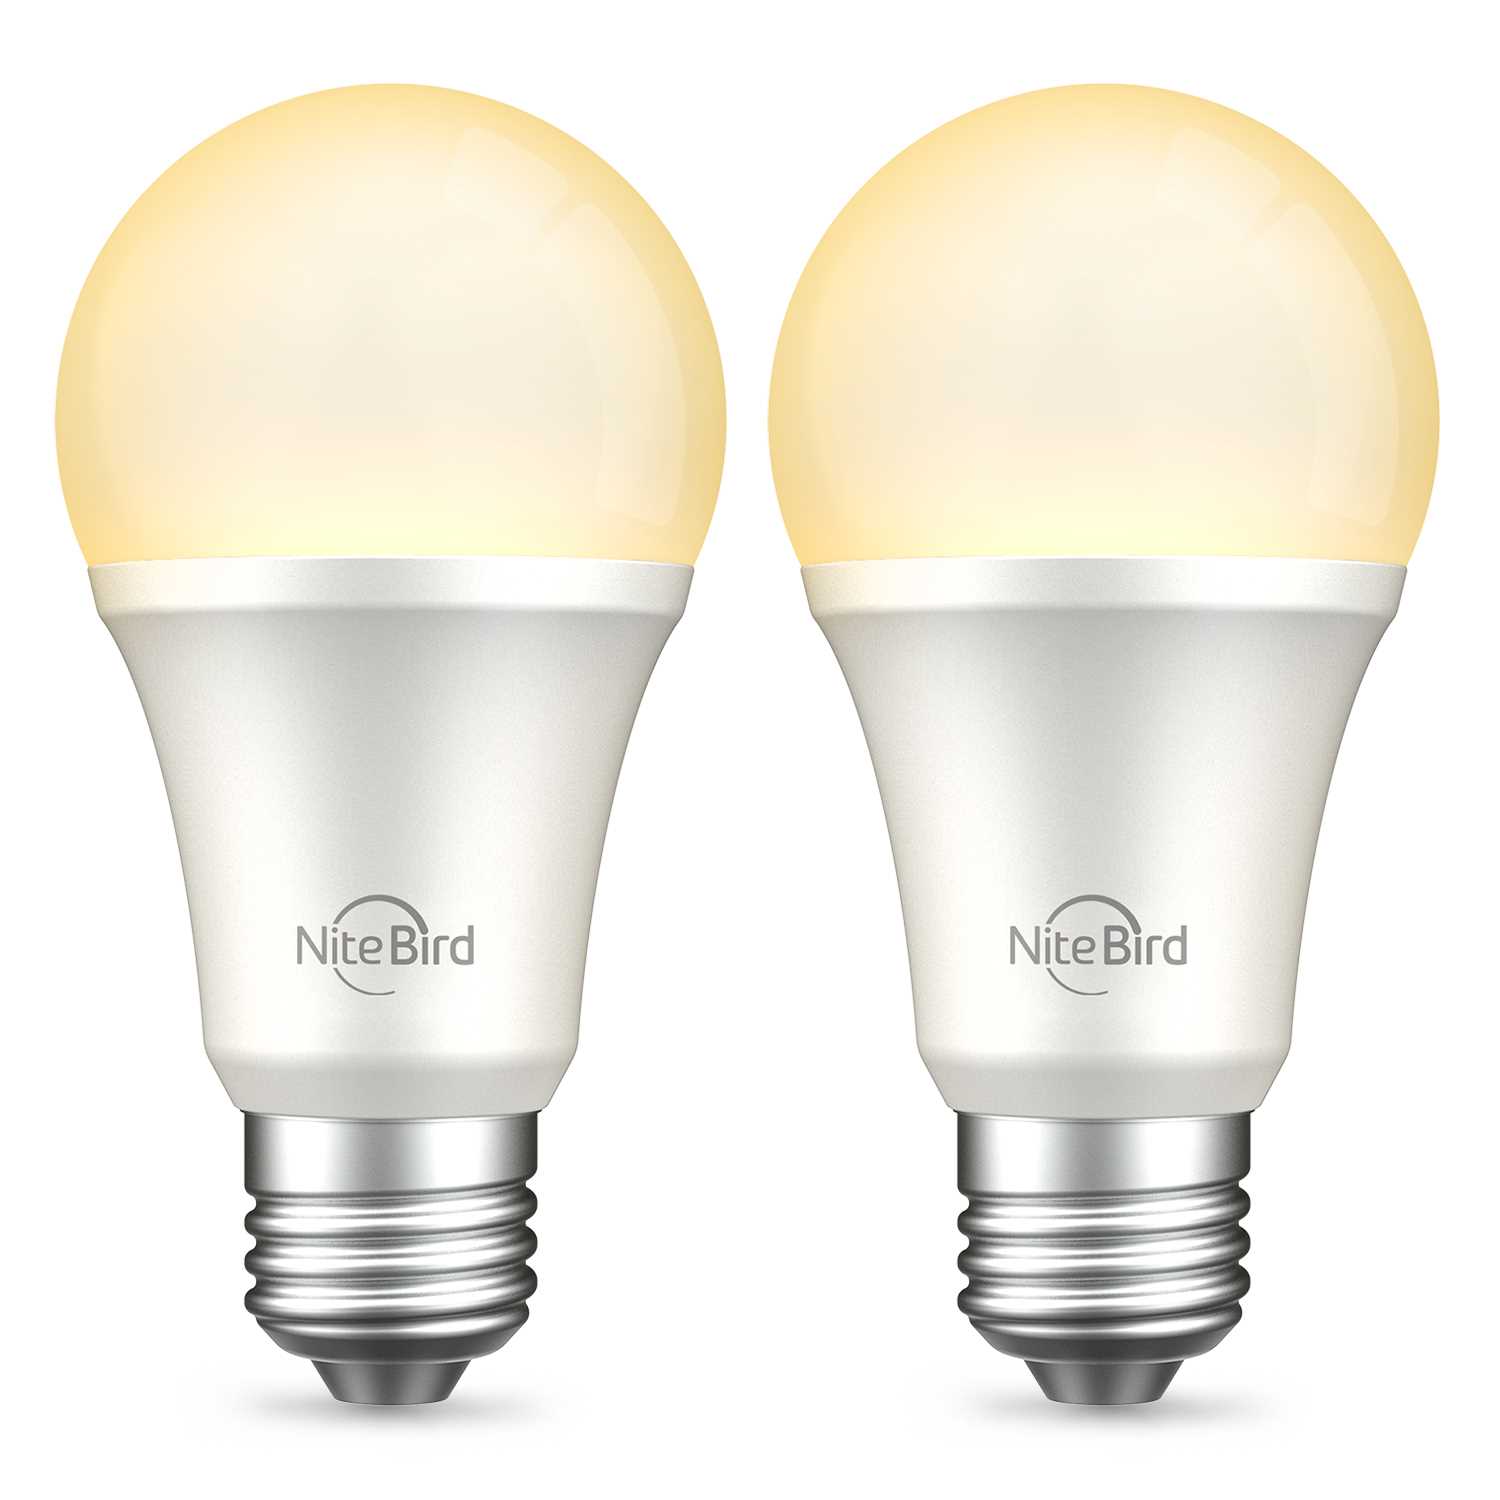 Лампа электрическая Nitebird Умная лампа Nitebird Smart bulb, цвет мульти набор ламп gosund nitebird smart bulb e27 rgb 2 pcs wb4